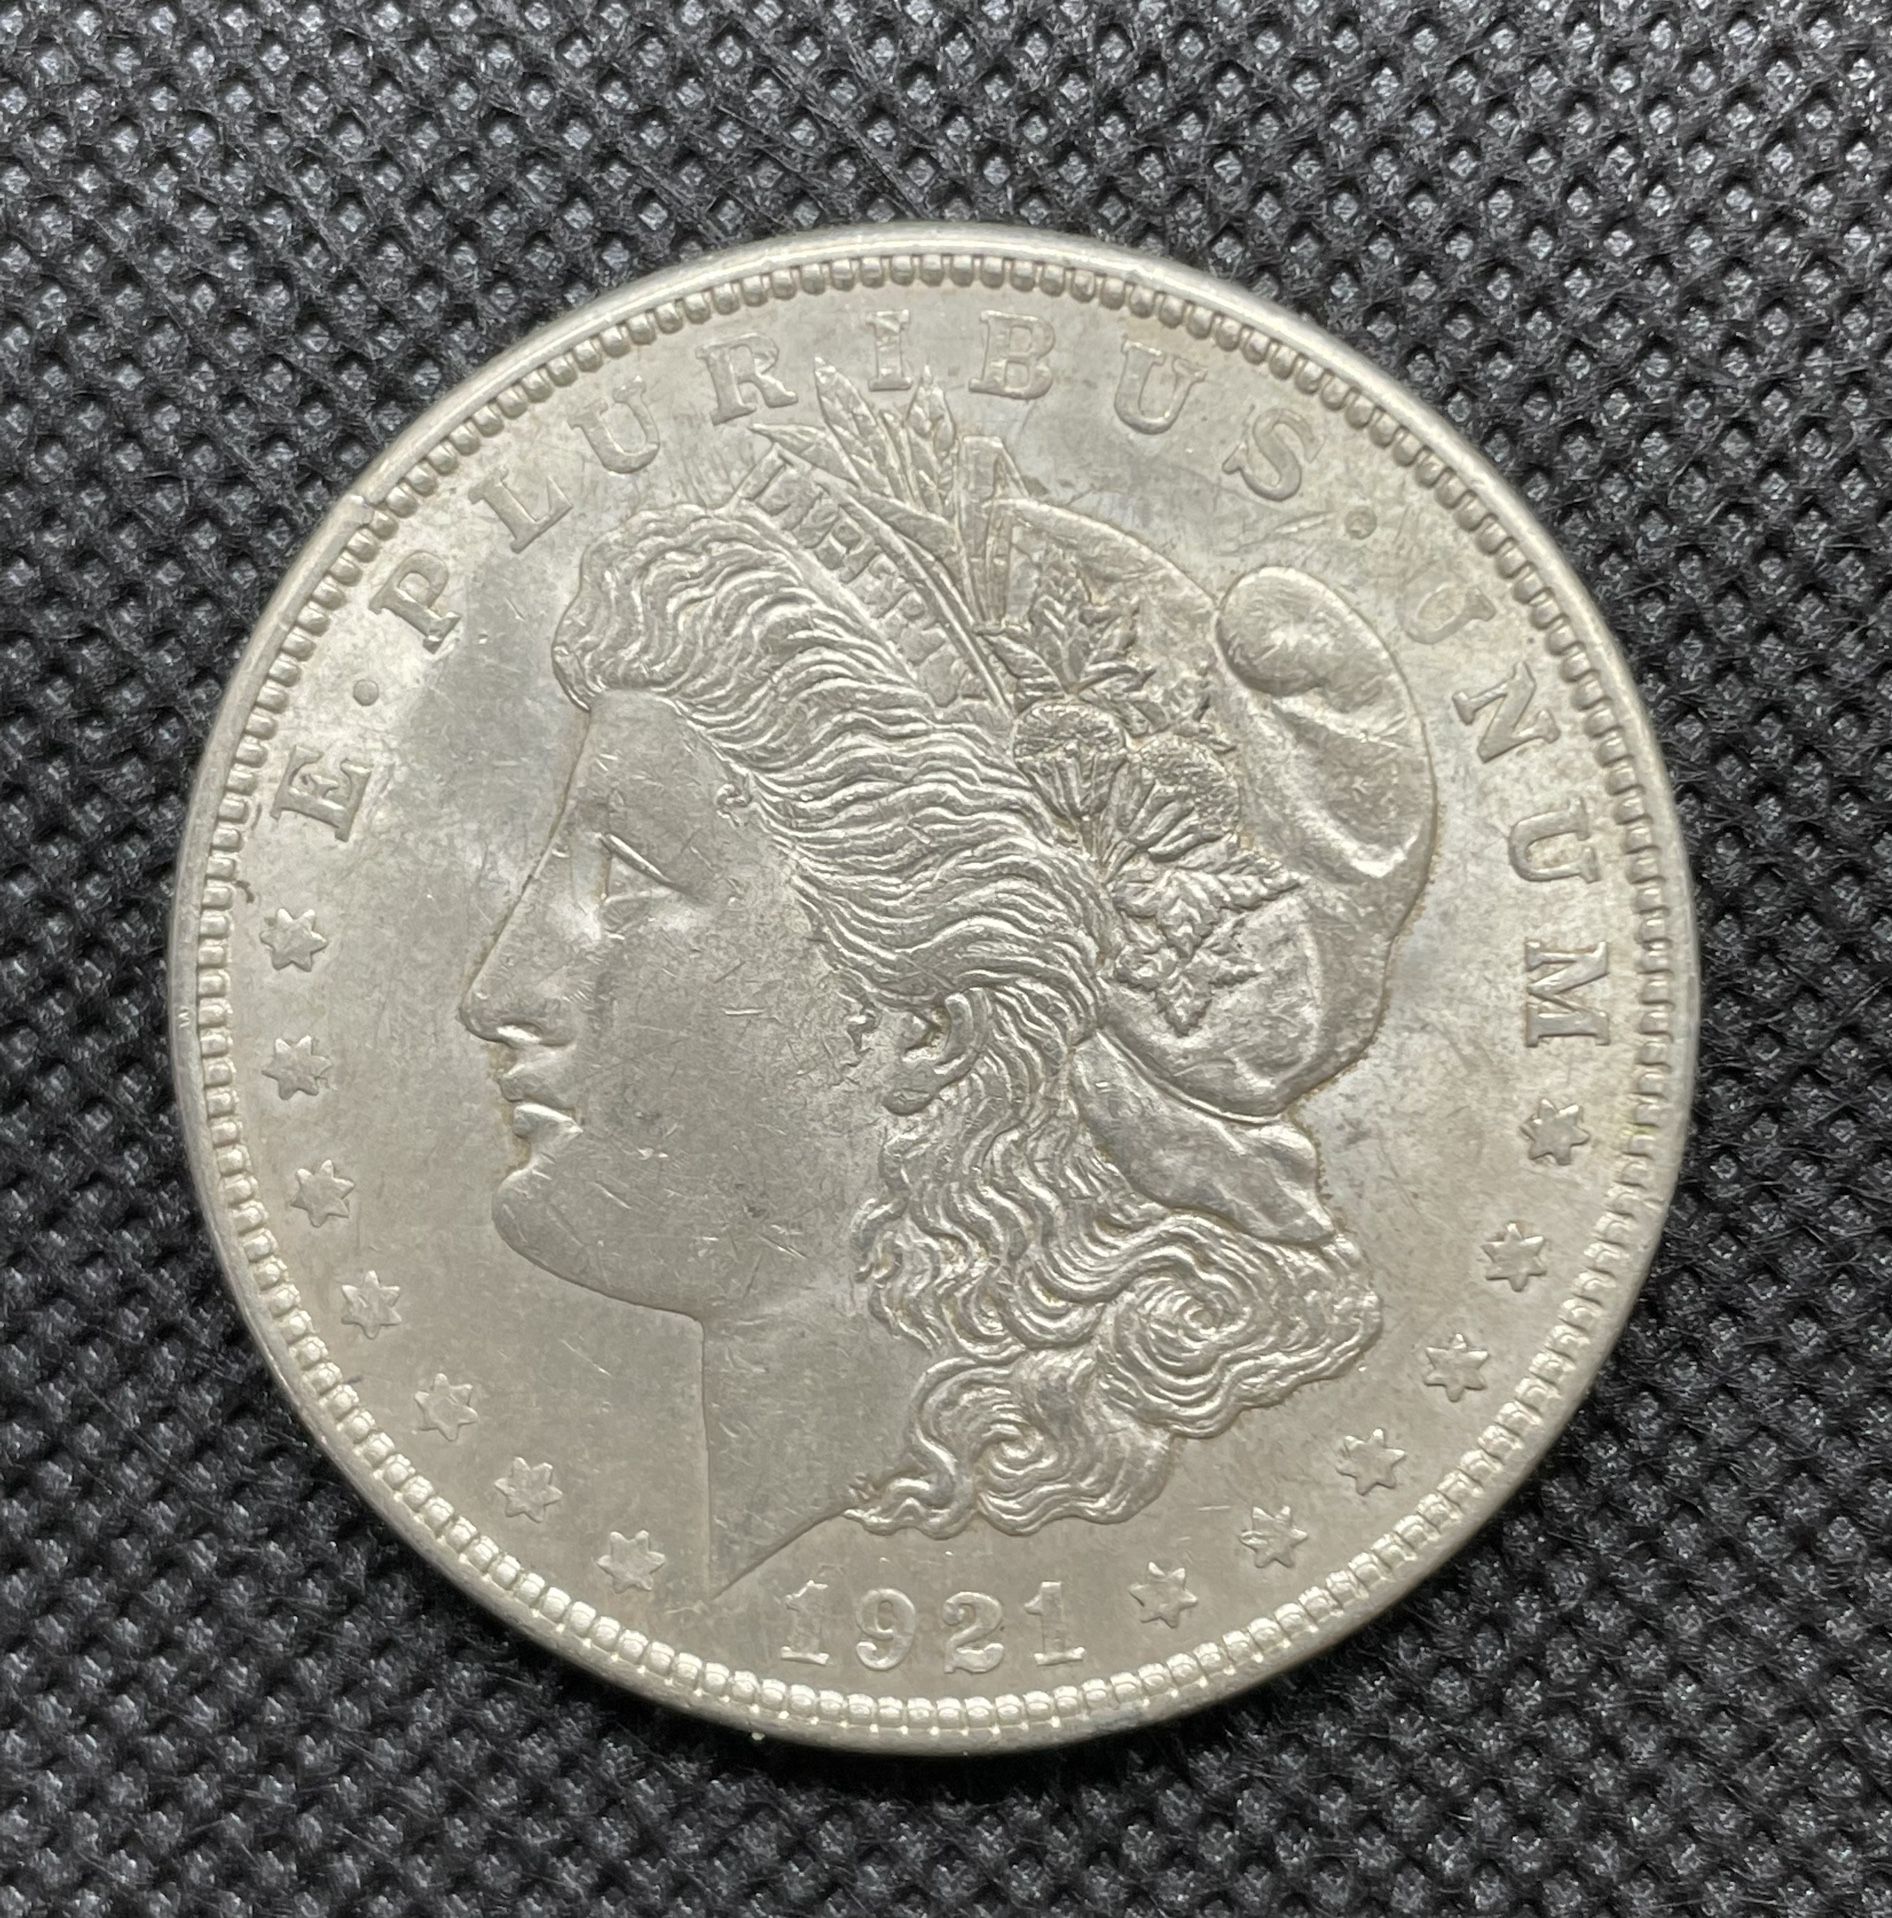 Collectible 1921 Morgan silver dollar